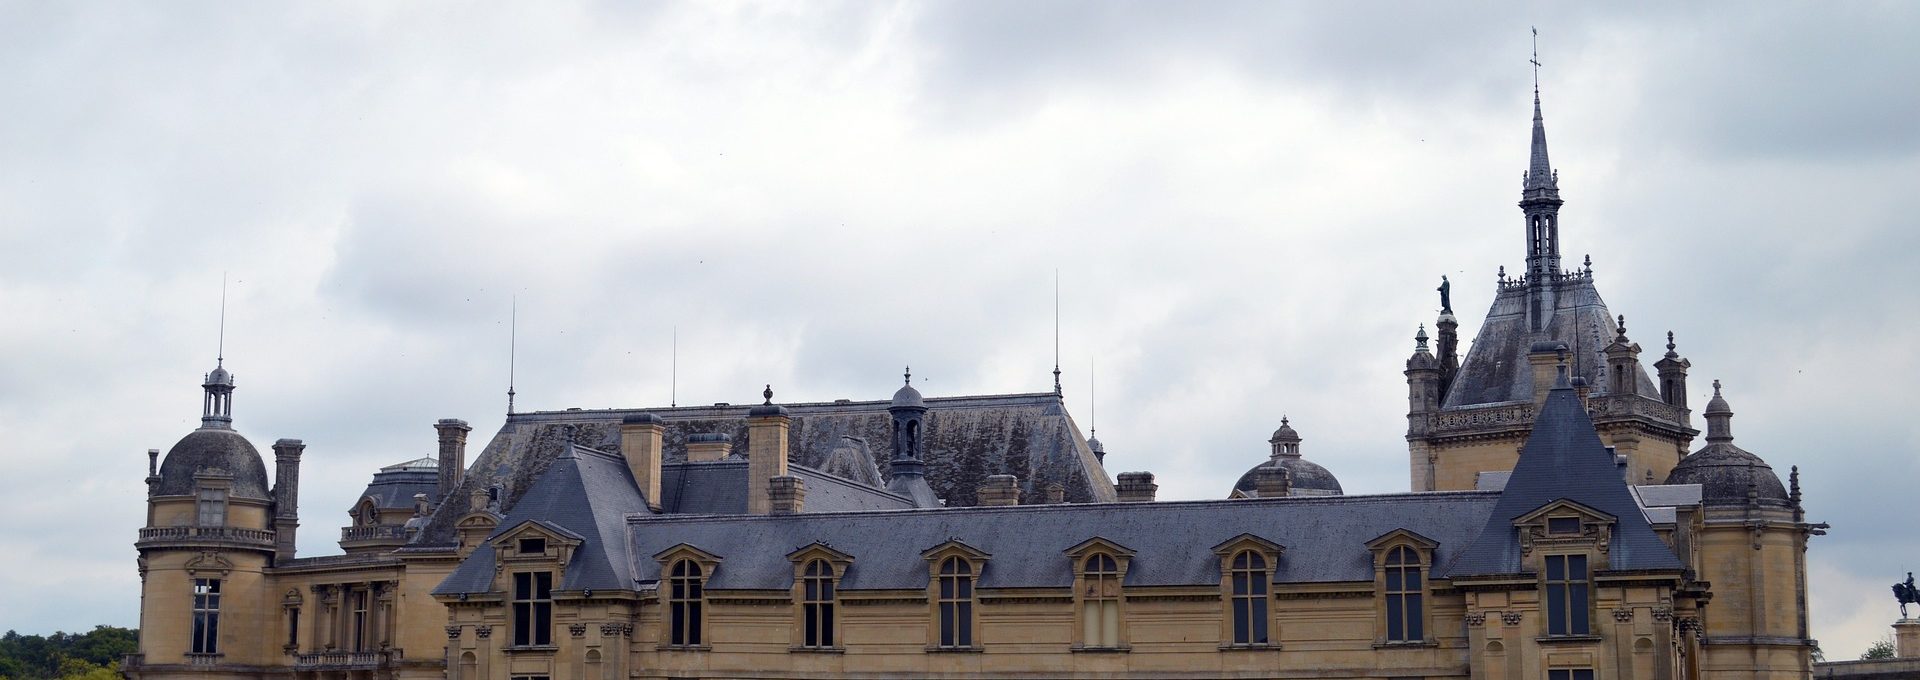 Vista de Castelo em Chantilly, França